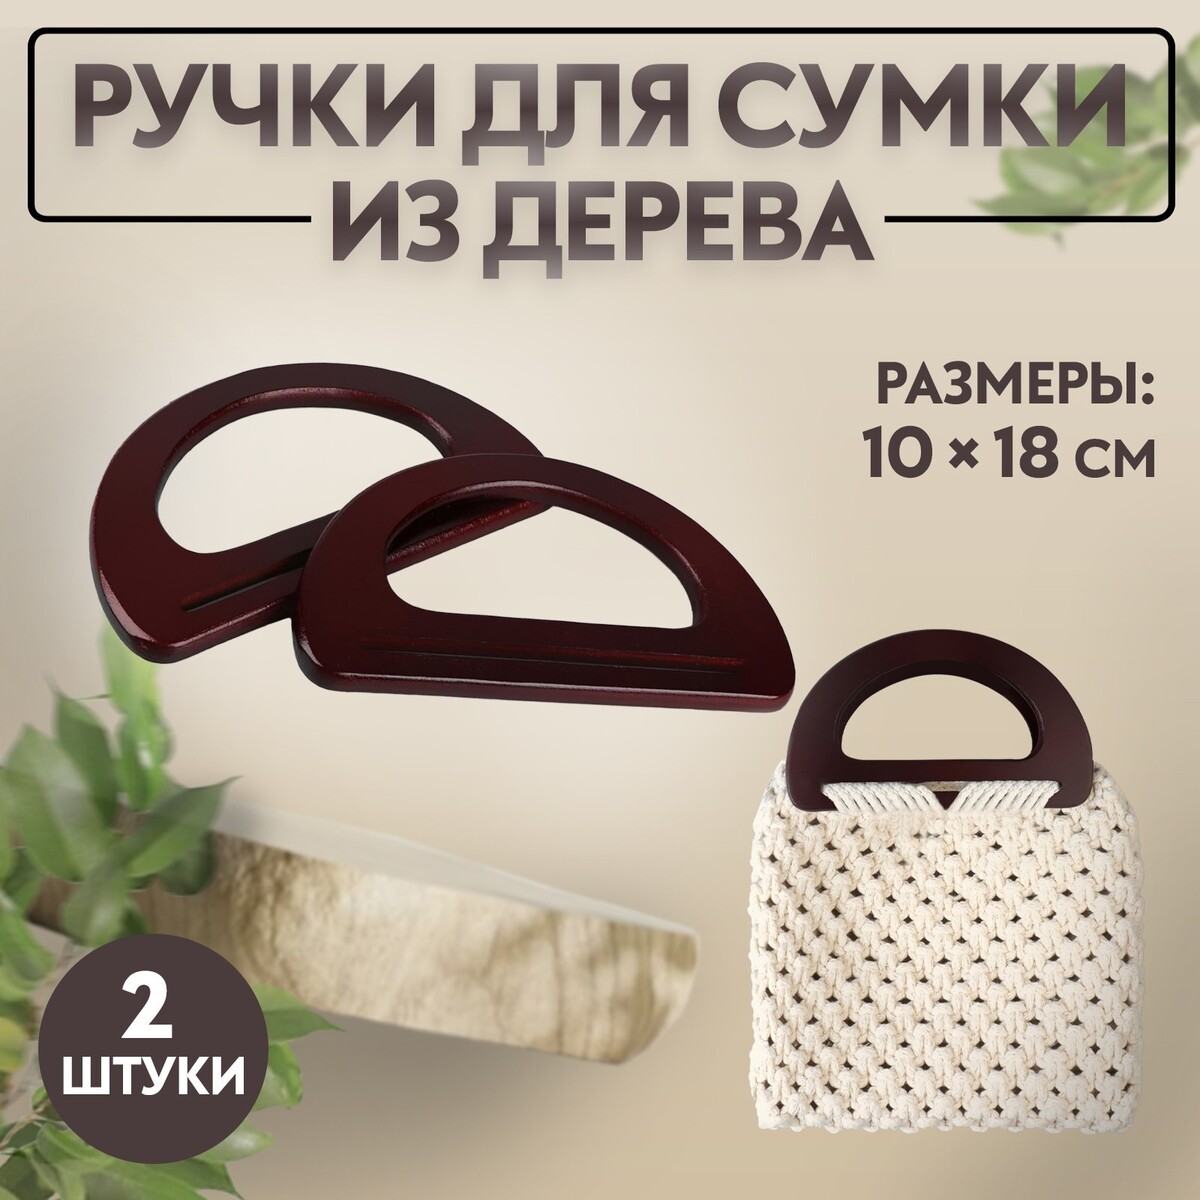 Ручки для сумки деревянные, 10 × 18 см, 2 шт, цвет коричневый ручки для сумок деревянные плетеные d 9 8 × 5 9 13 5 × 9 5 см 2 шт коричневый